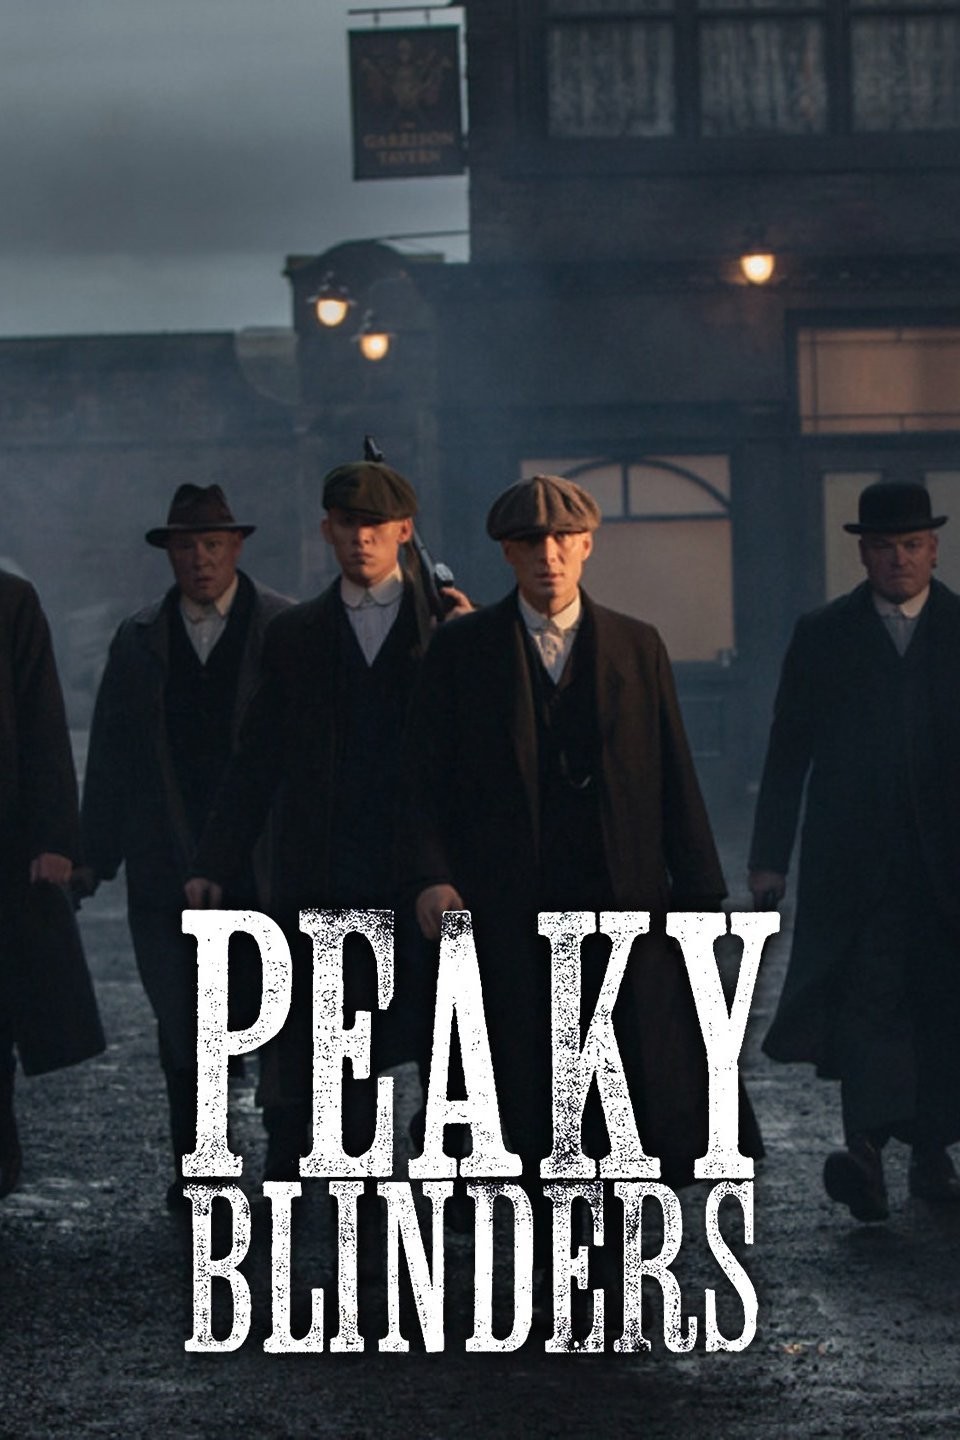 Peaky Blinders Season 6 Sets June Release Date on Netflix